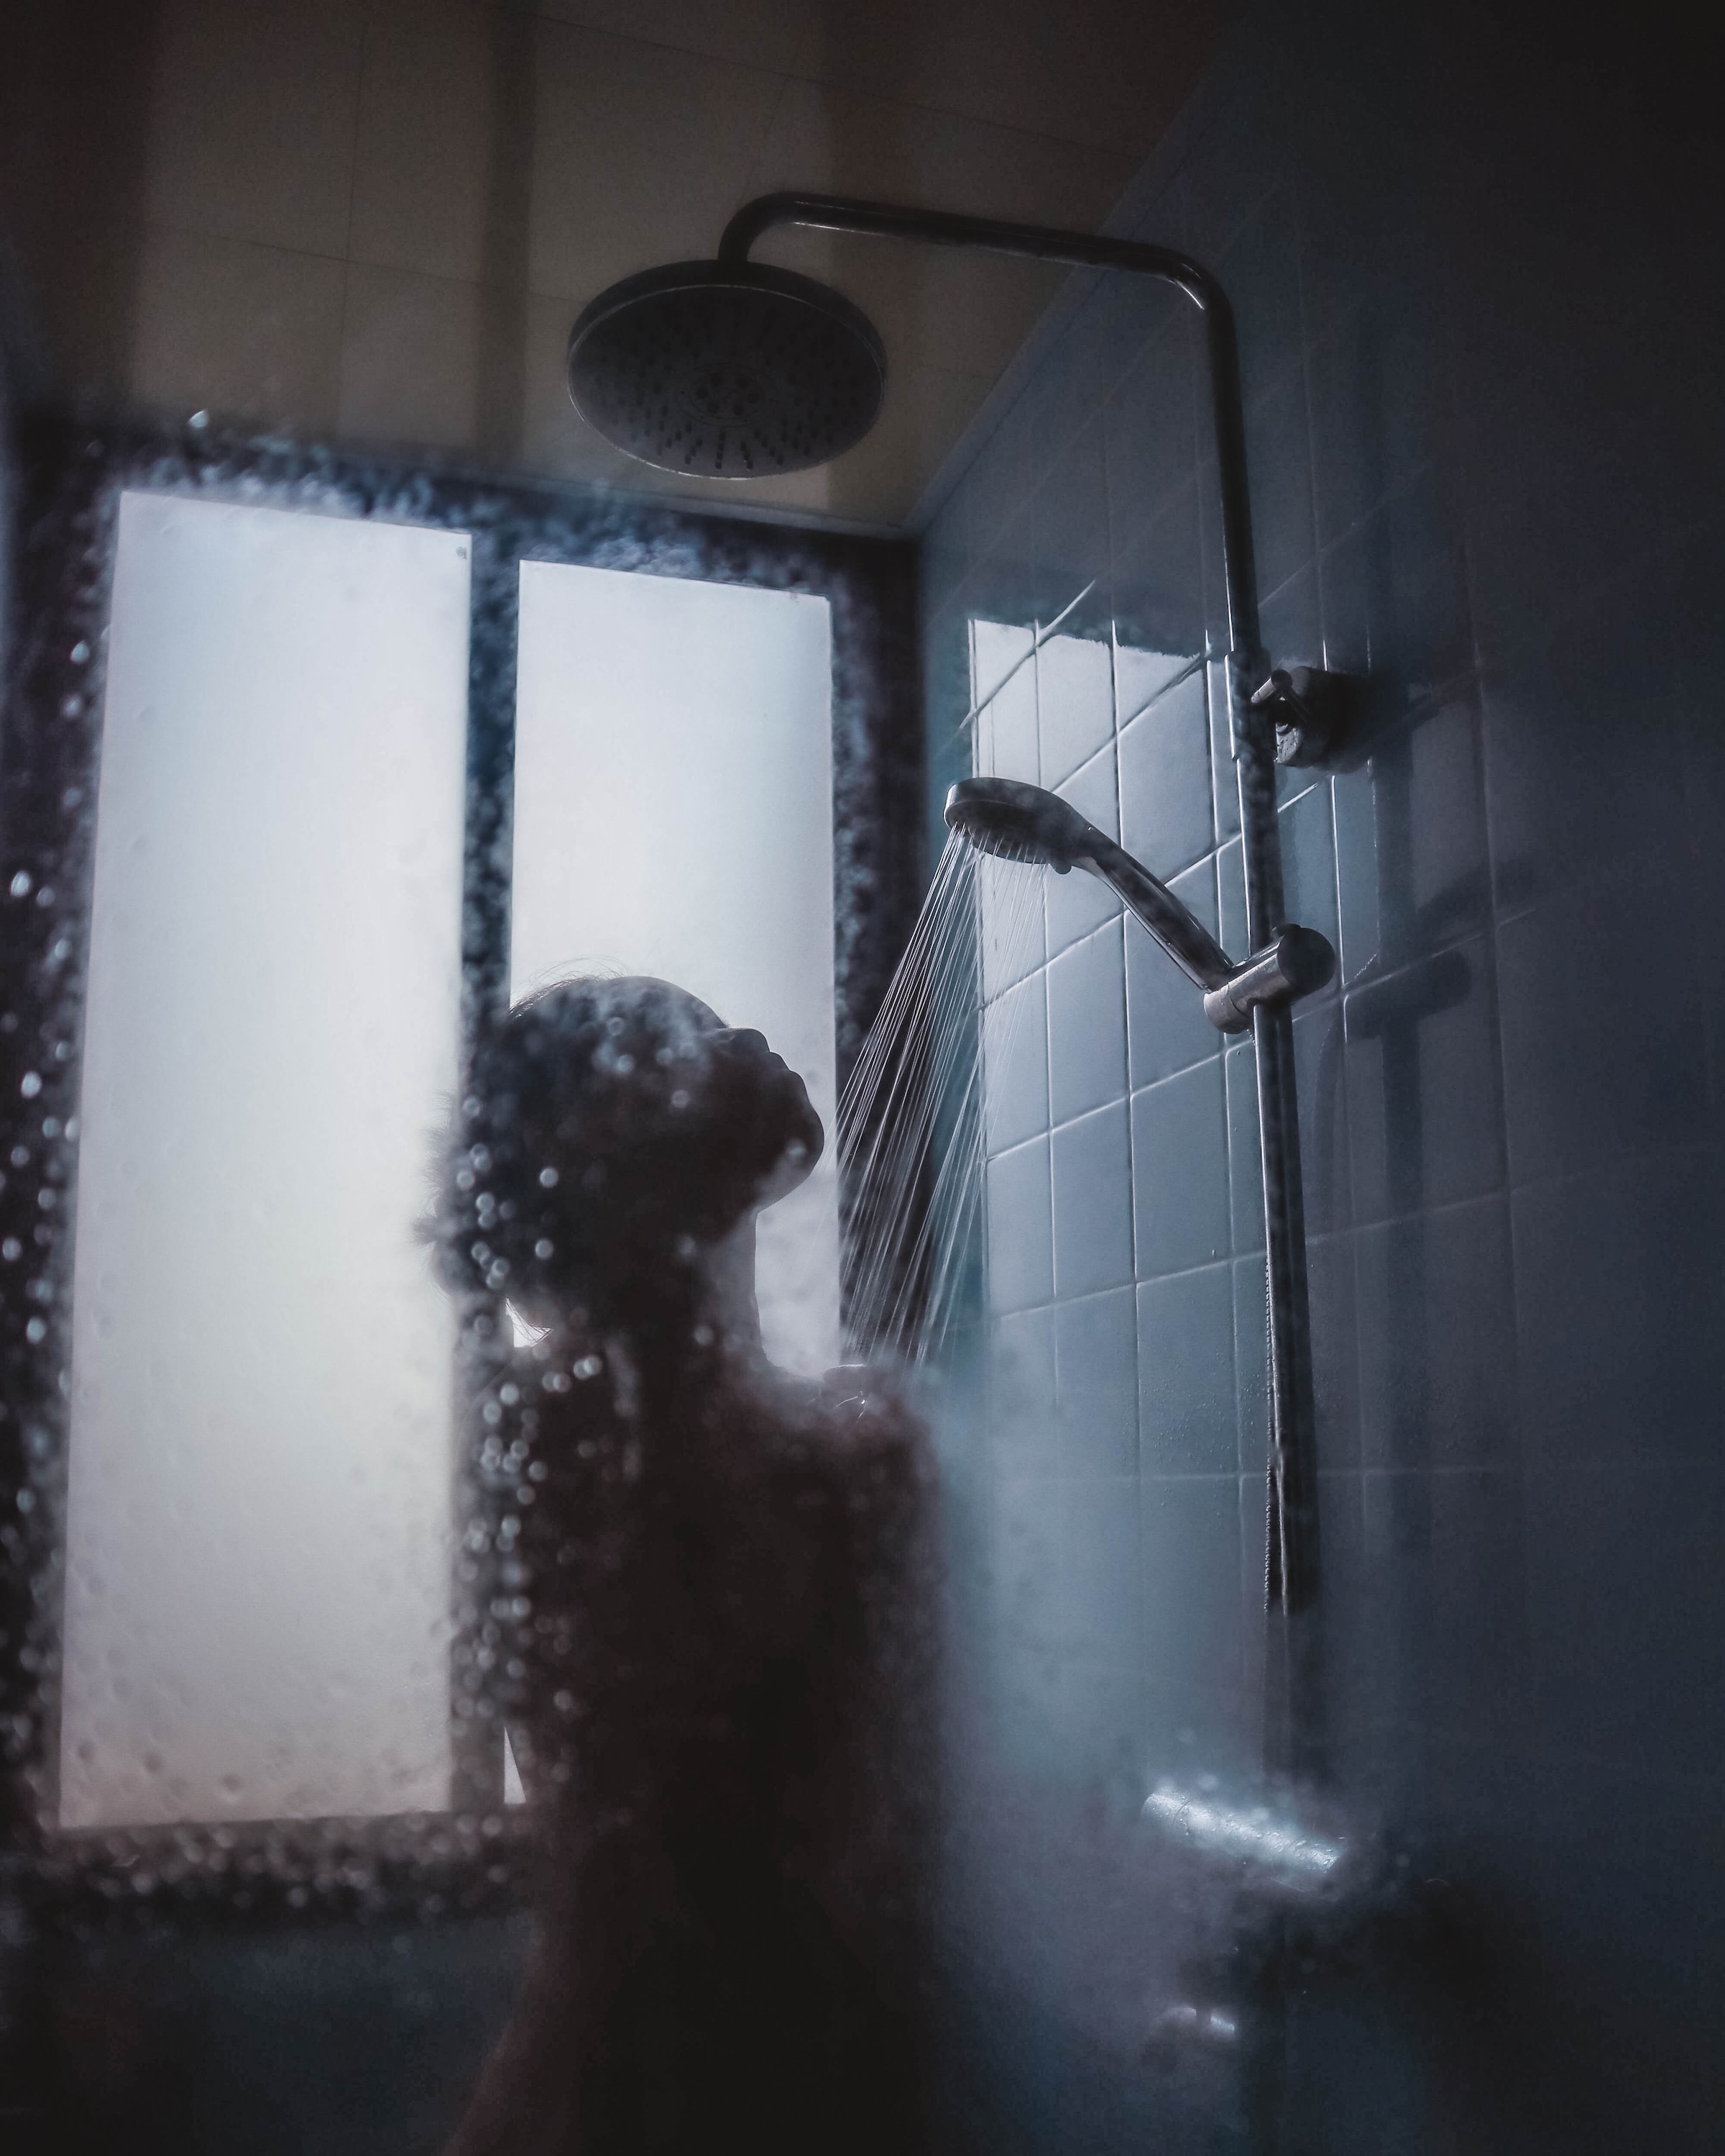 Persona en la ducha | Foto: Unsplash